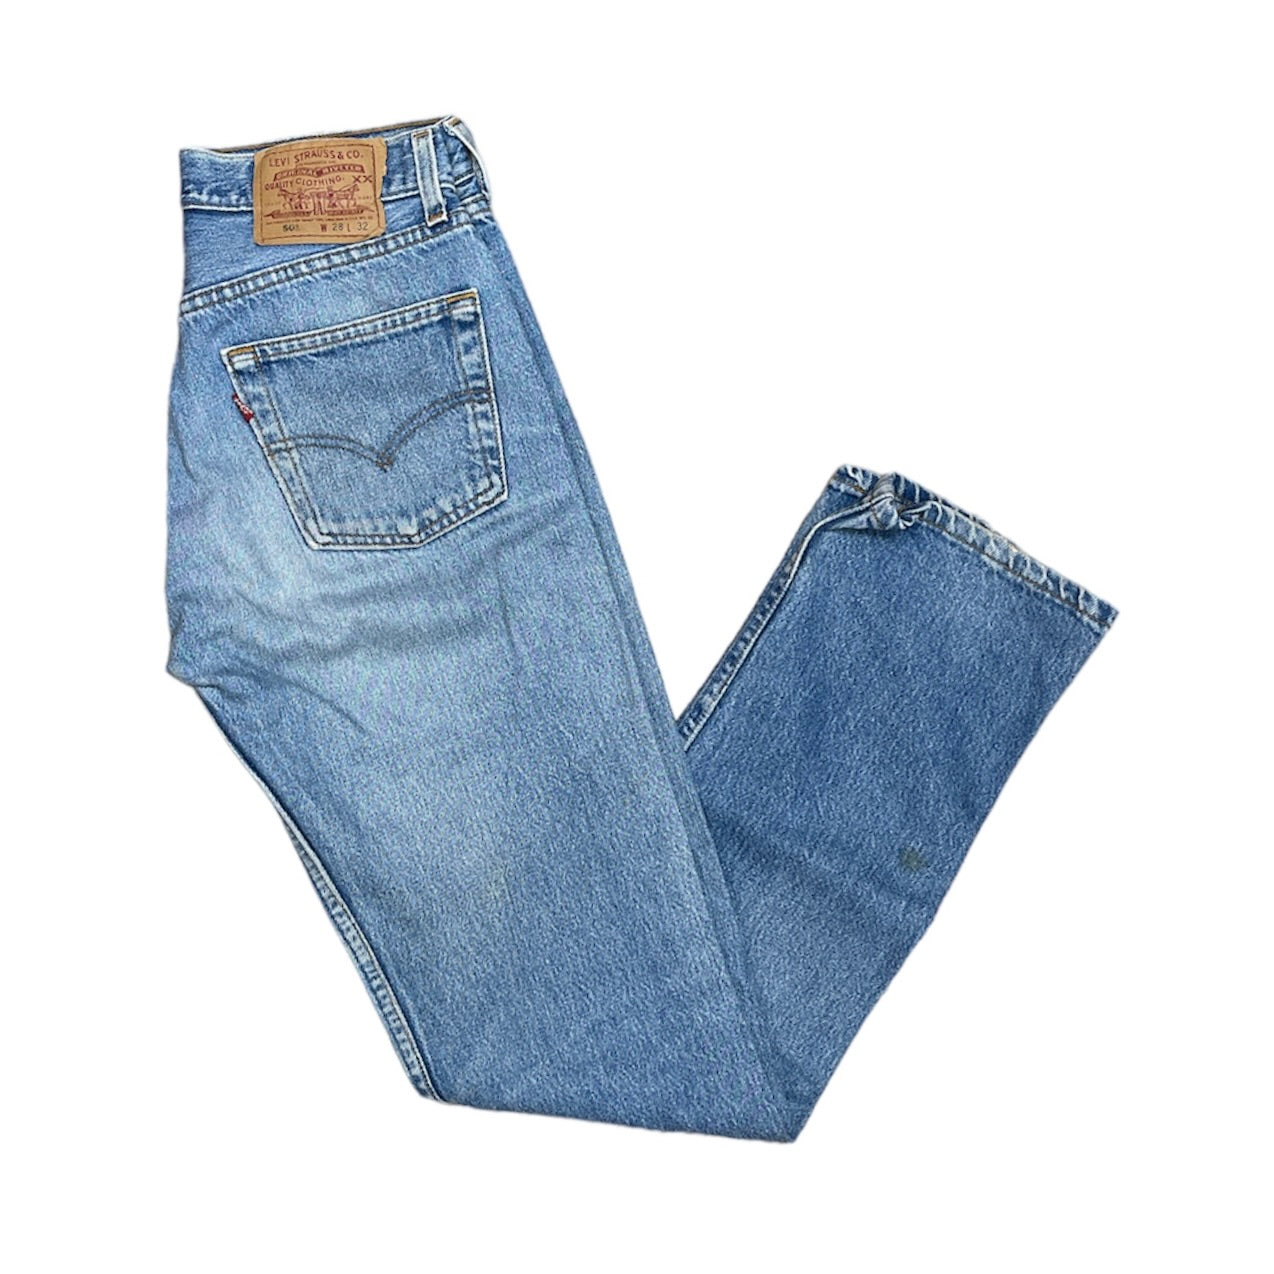 Vintage Levis 501 Blue Jeans (W28/32)